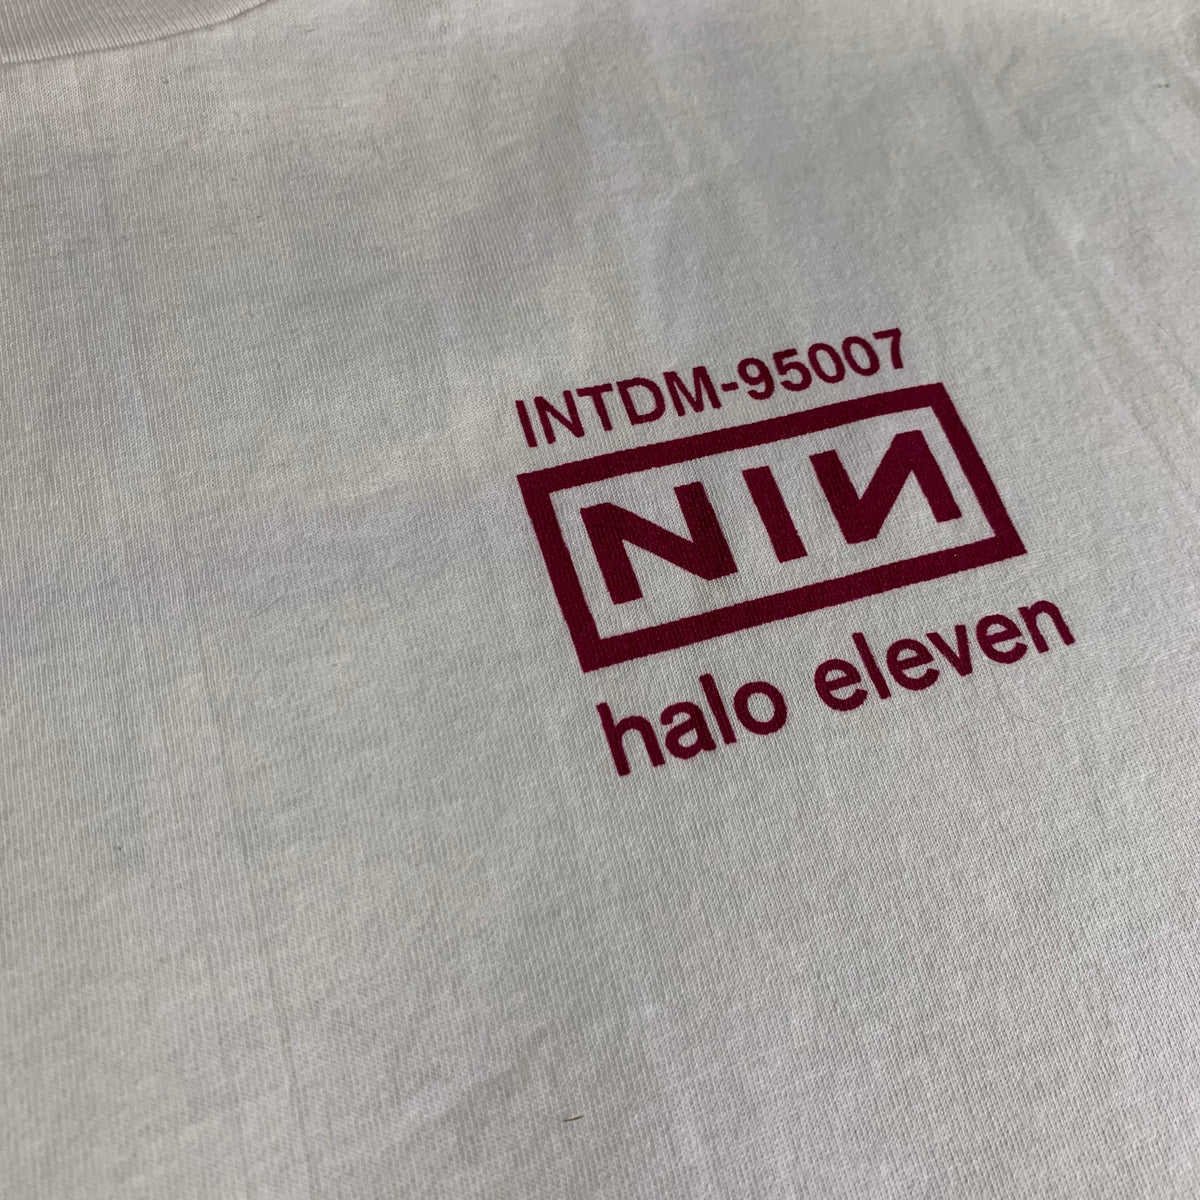 Vintage Nine Inch Nails &quot;Halo Eleven&quot; T-Shirt